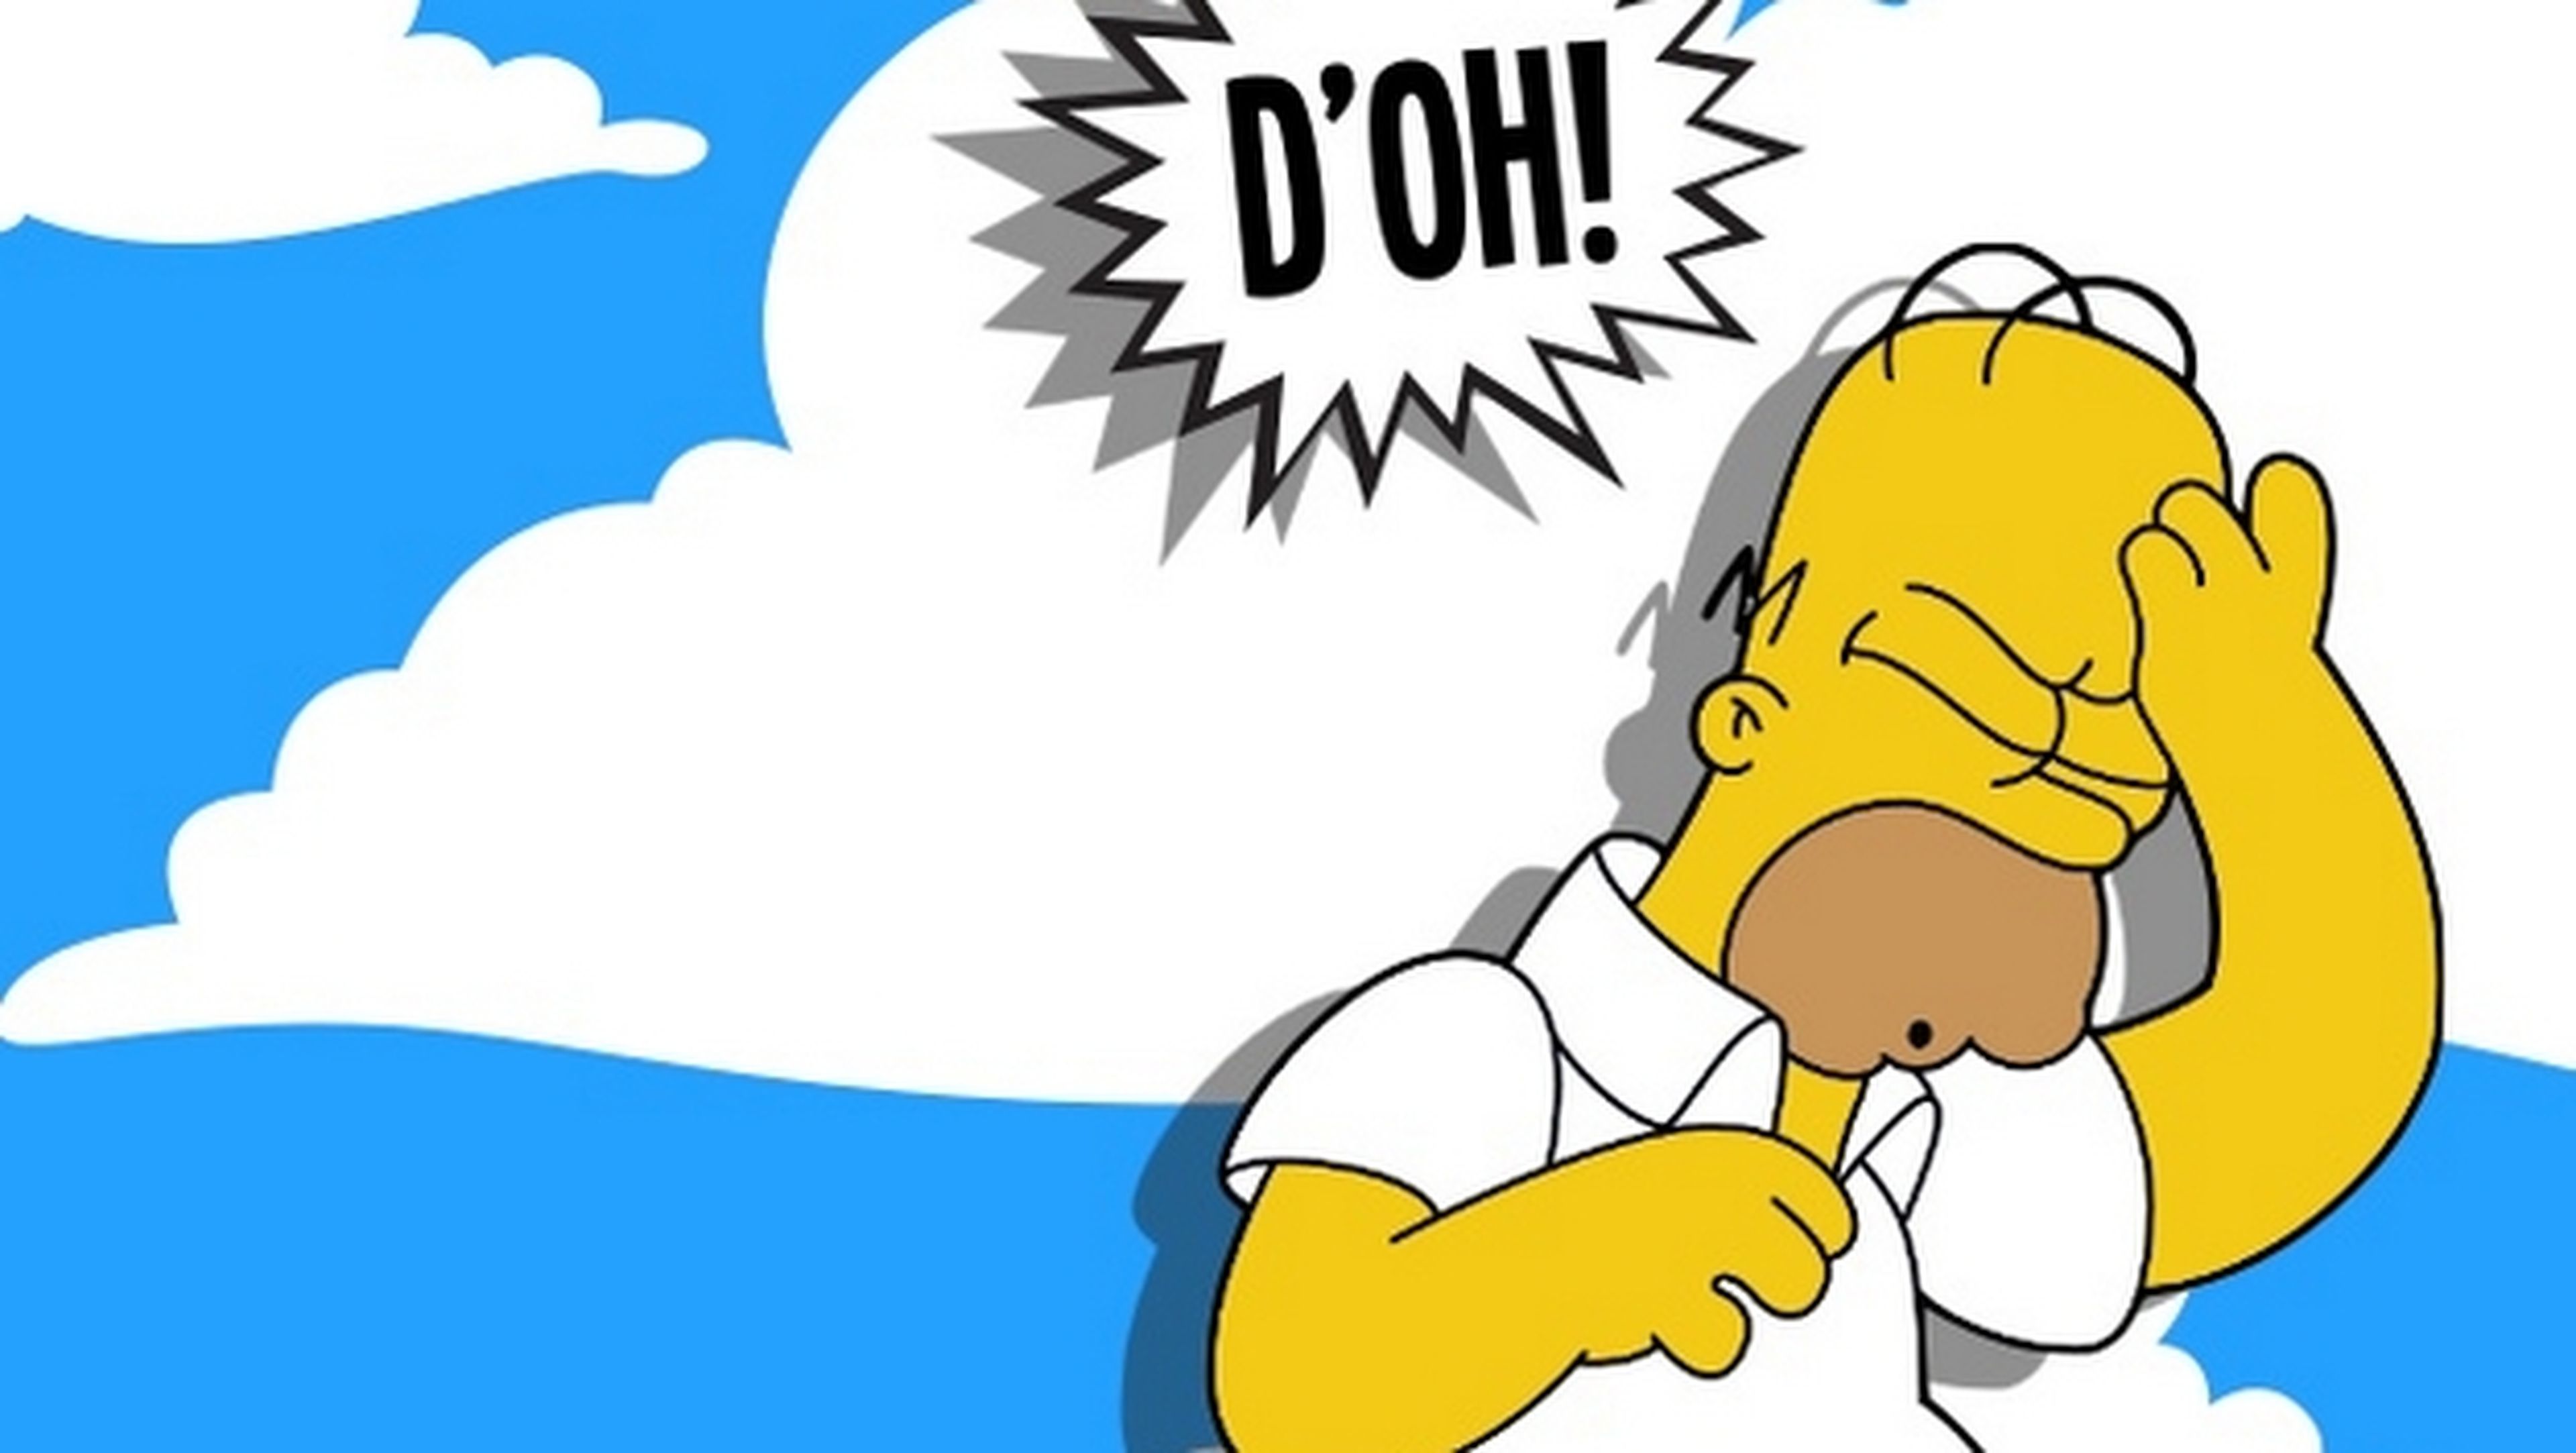 Antena 3 plagia los resúmenes de los capítulos de Los Simpson a una web de fans. Incluido resúmenes falsos con palabras como A3Sucks, creados para pillarles. Un tweet lo cuenta todo.